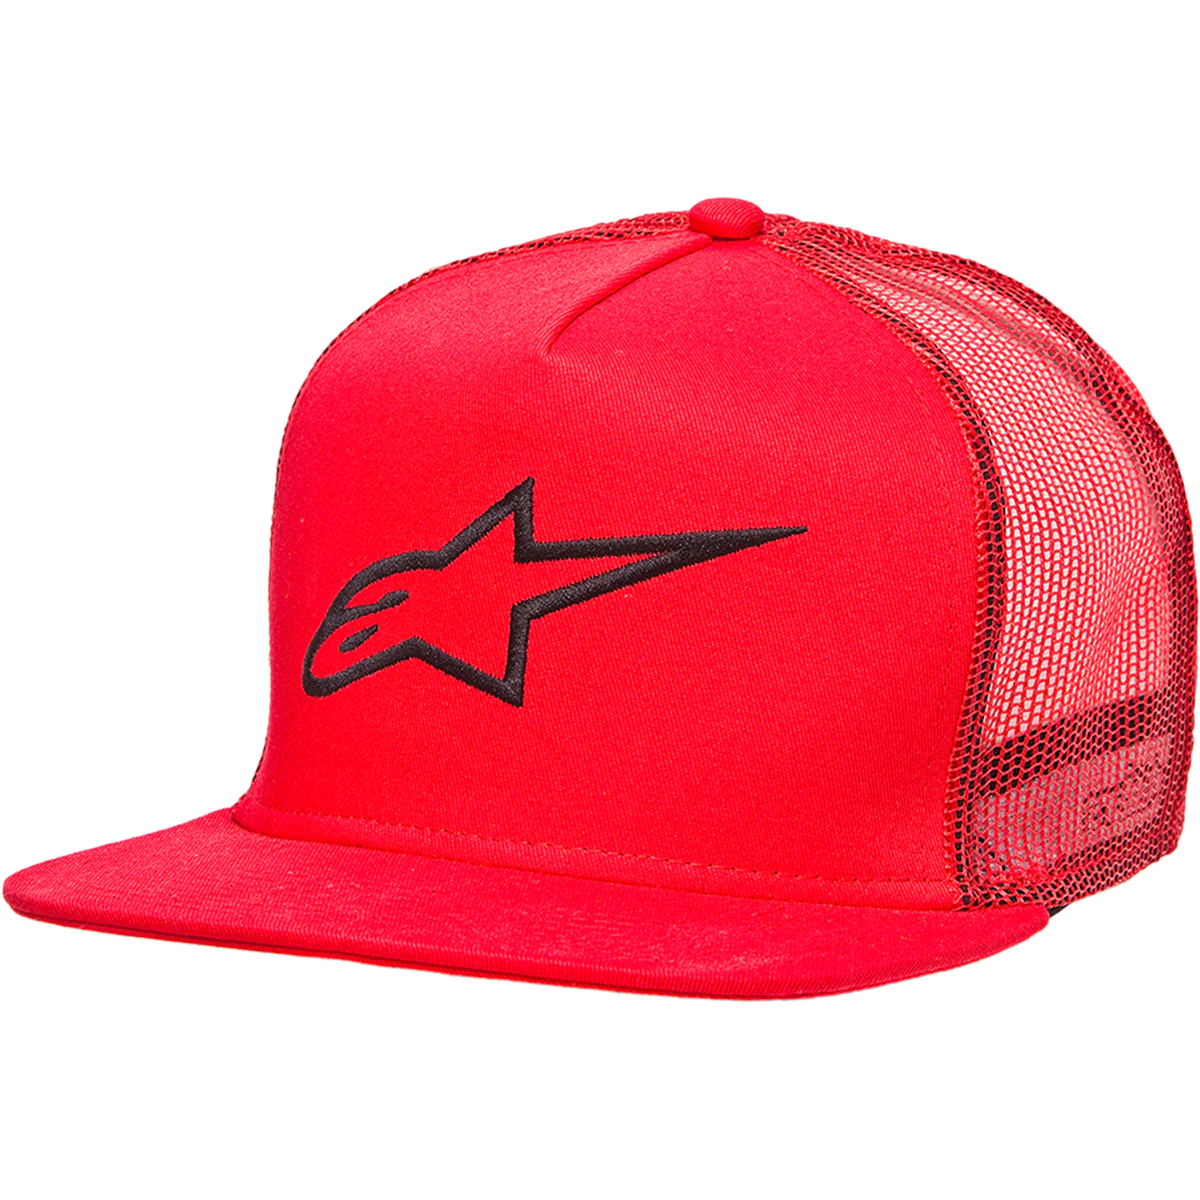 Alpinestars - Corp Trucker Hat